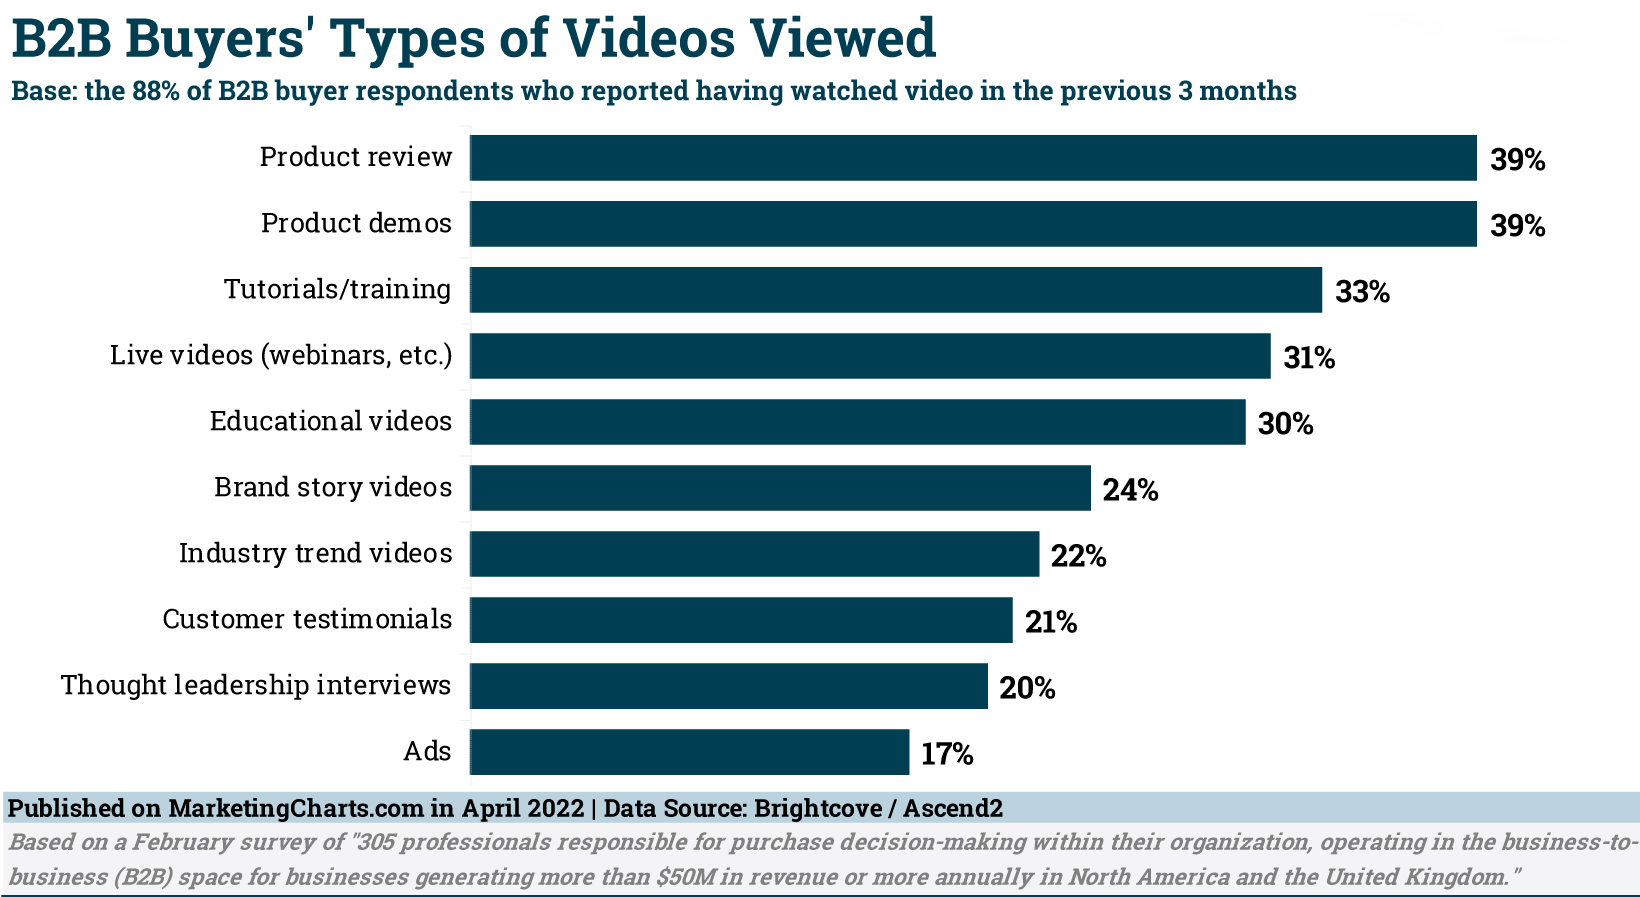 Types of Videos B2B Buyers Viewed